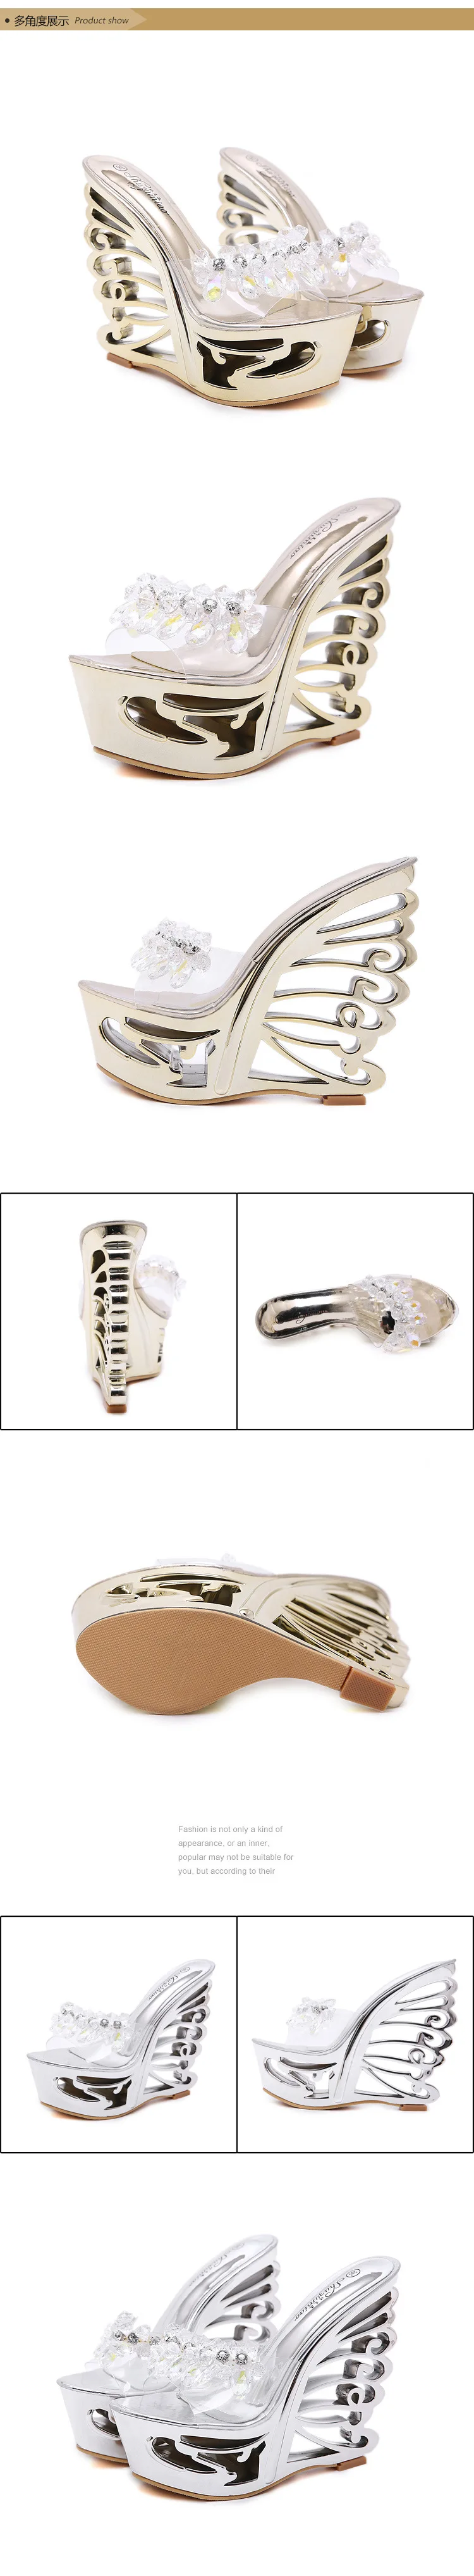 Кожа пуговицы браслеты металлические декоративные гидроизоляционные платформы специальный каблук сандалии и особо высокие каблуки LFD-1076-8